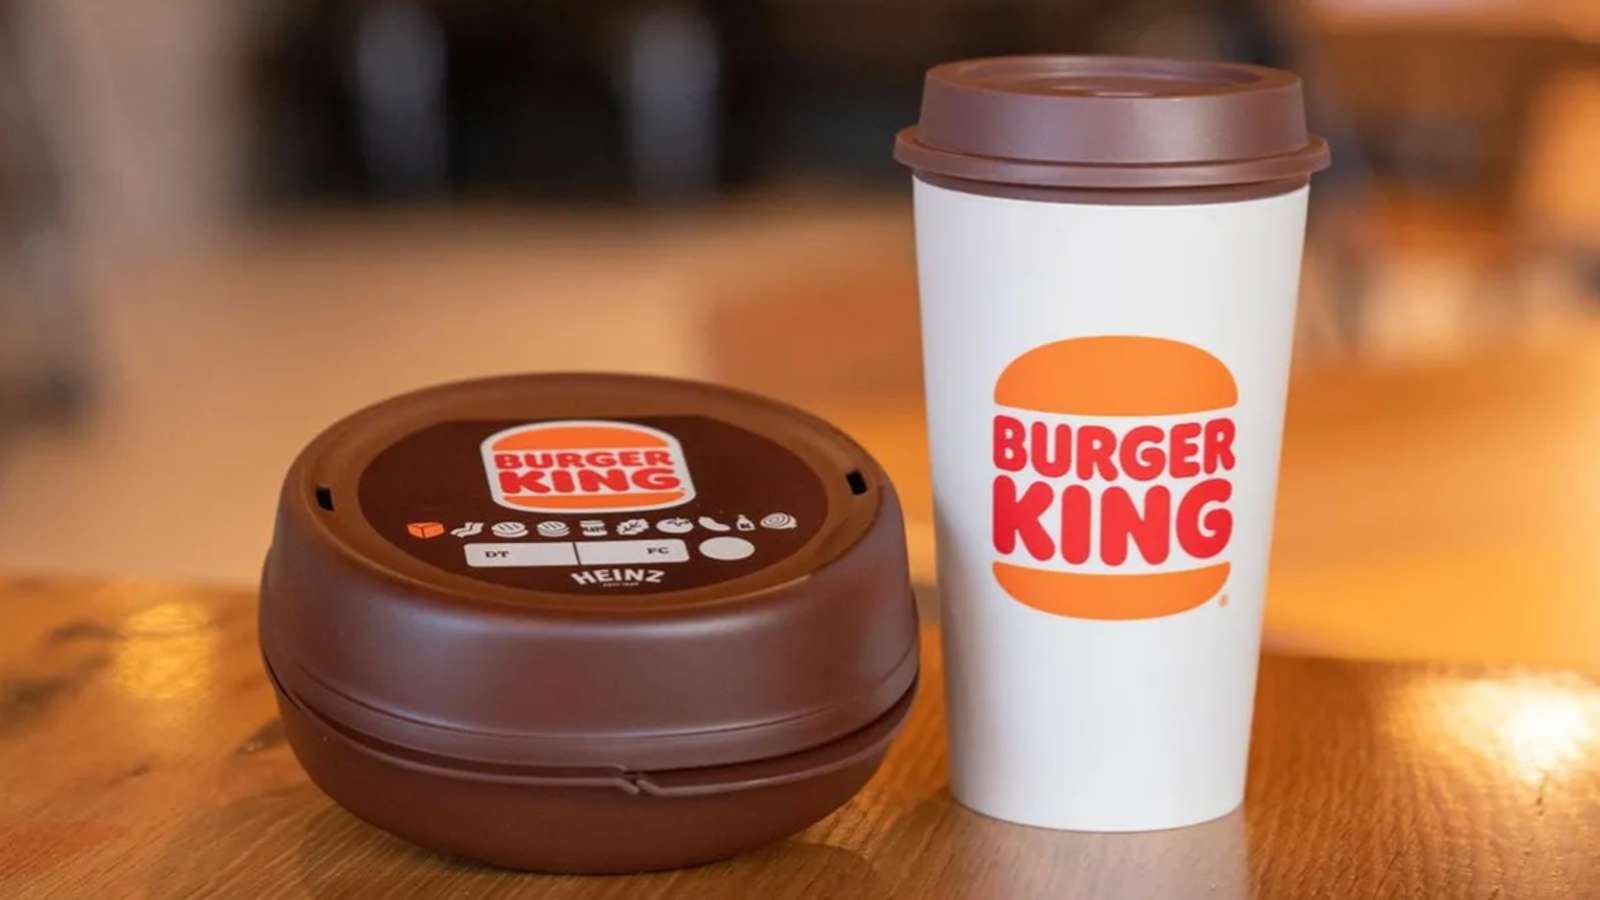 Burger King packaging